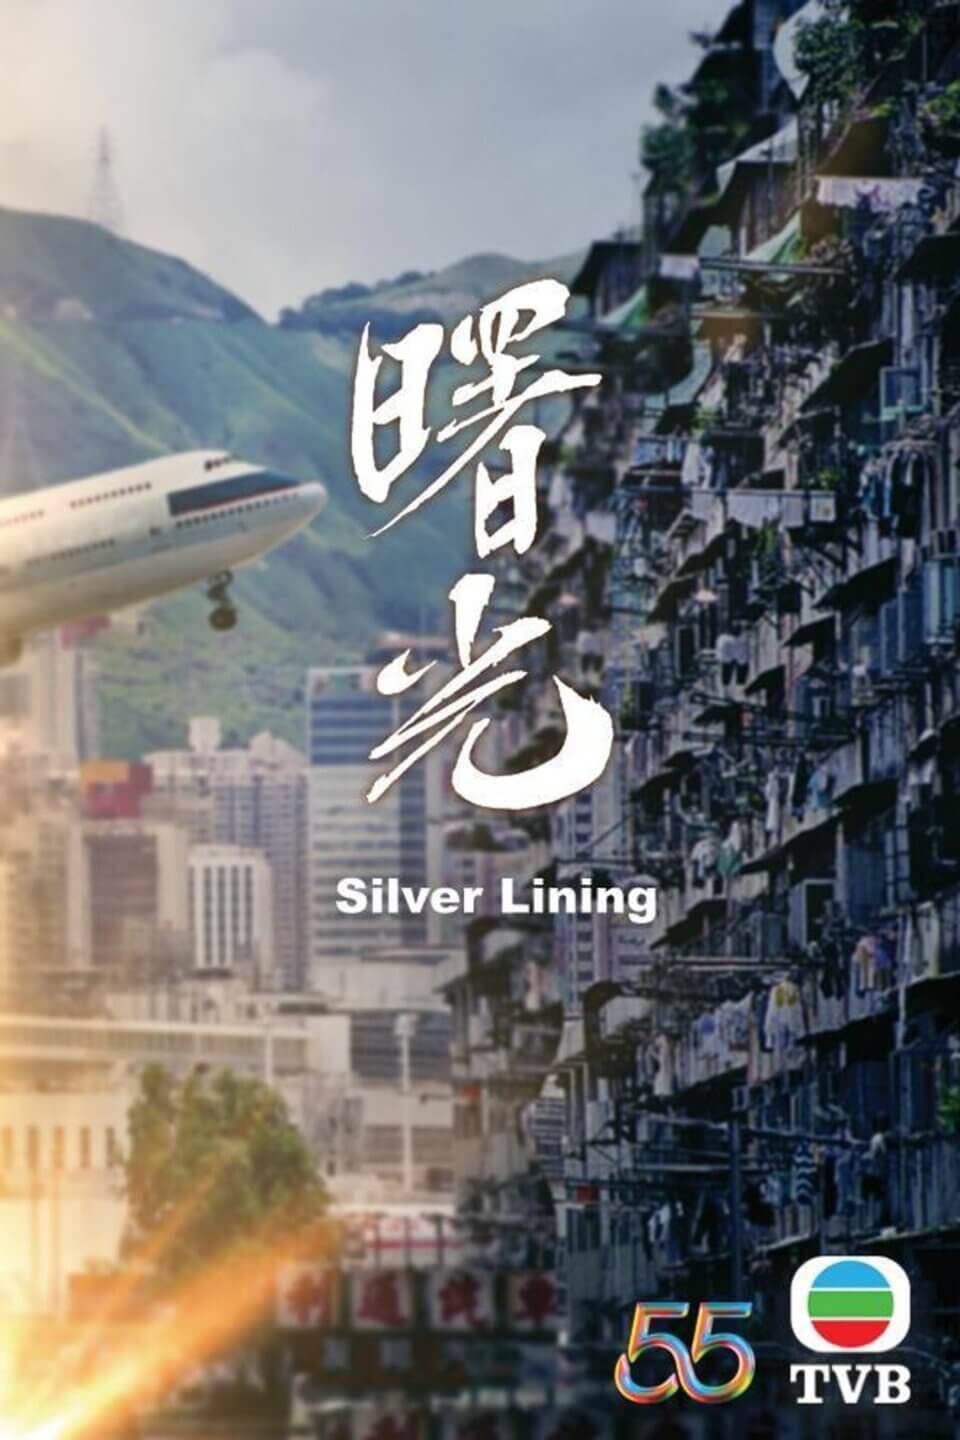 TV ratings for Silver Lining (曙光) in Irlanda. TVB Jade TV series